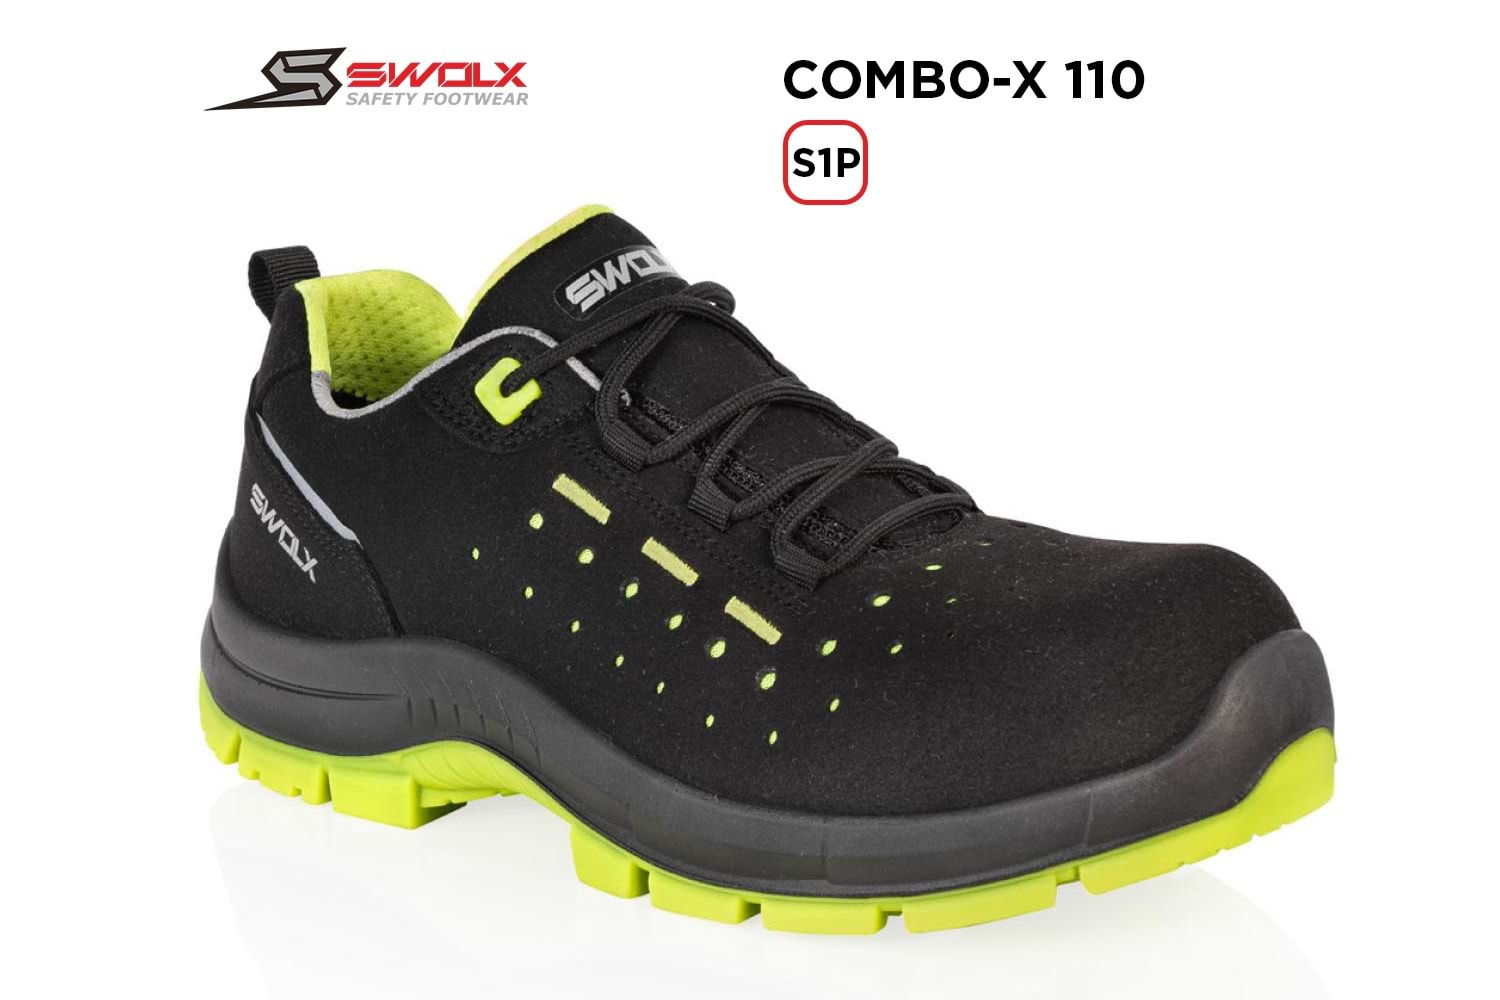 Swolx İş Ayakkabısı - Combo-X 110 S1P - 44